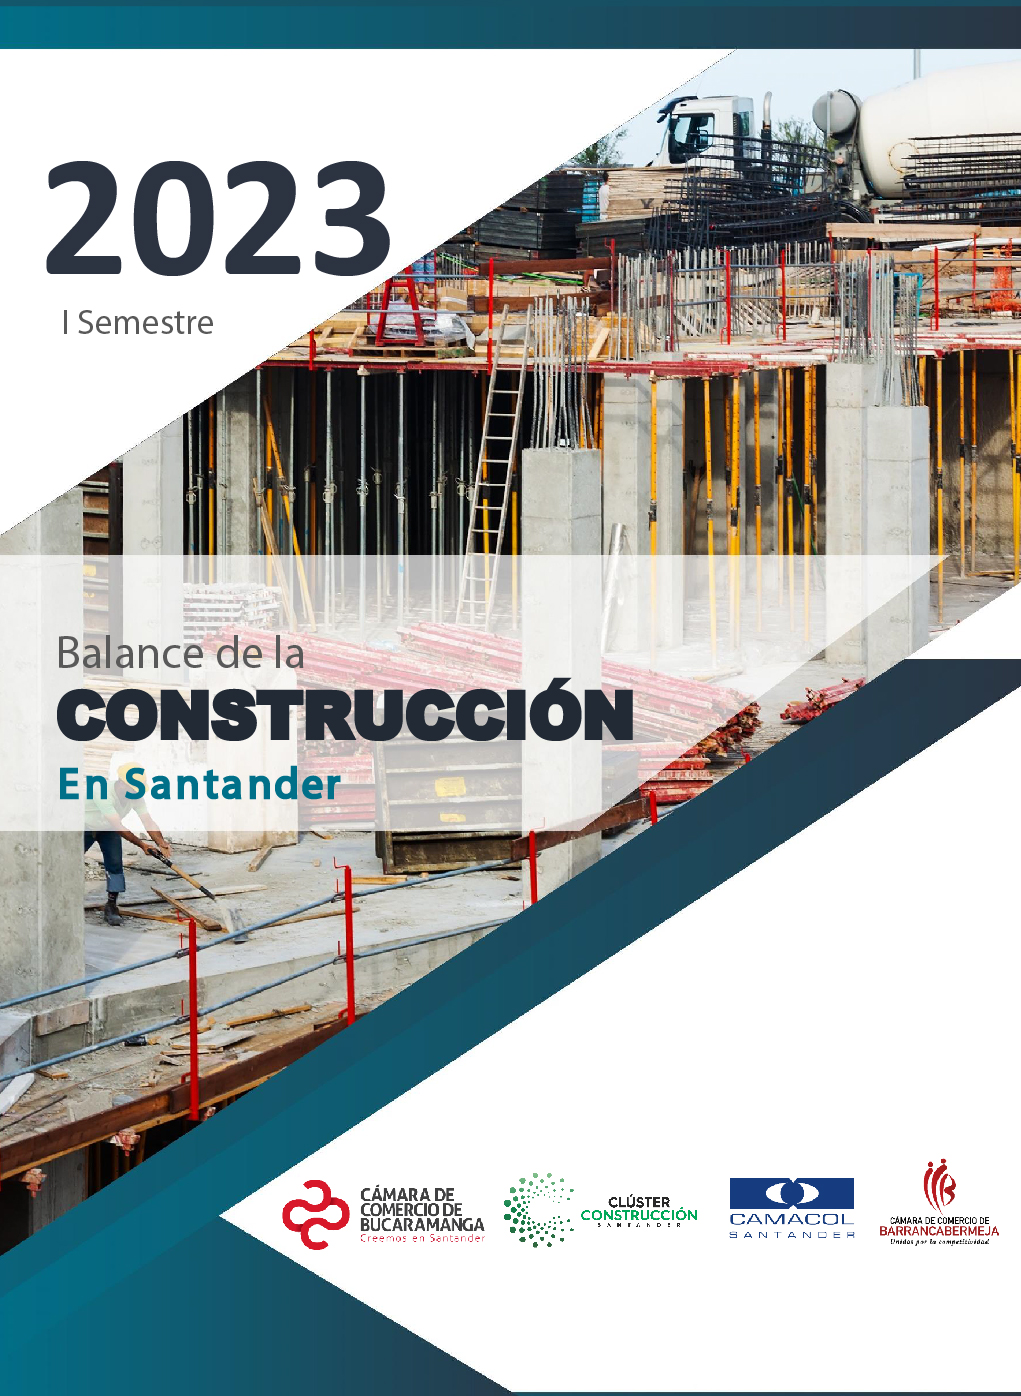 Balance de la ConstrucciÃ³n de Santander 2023 - I semestre